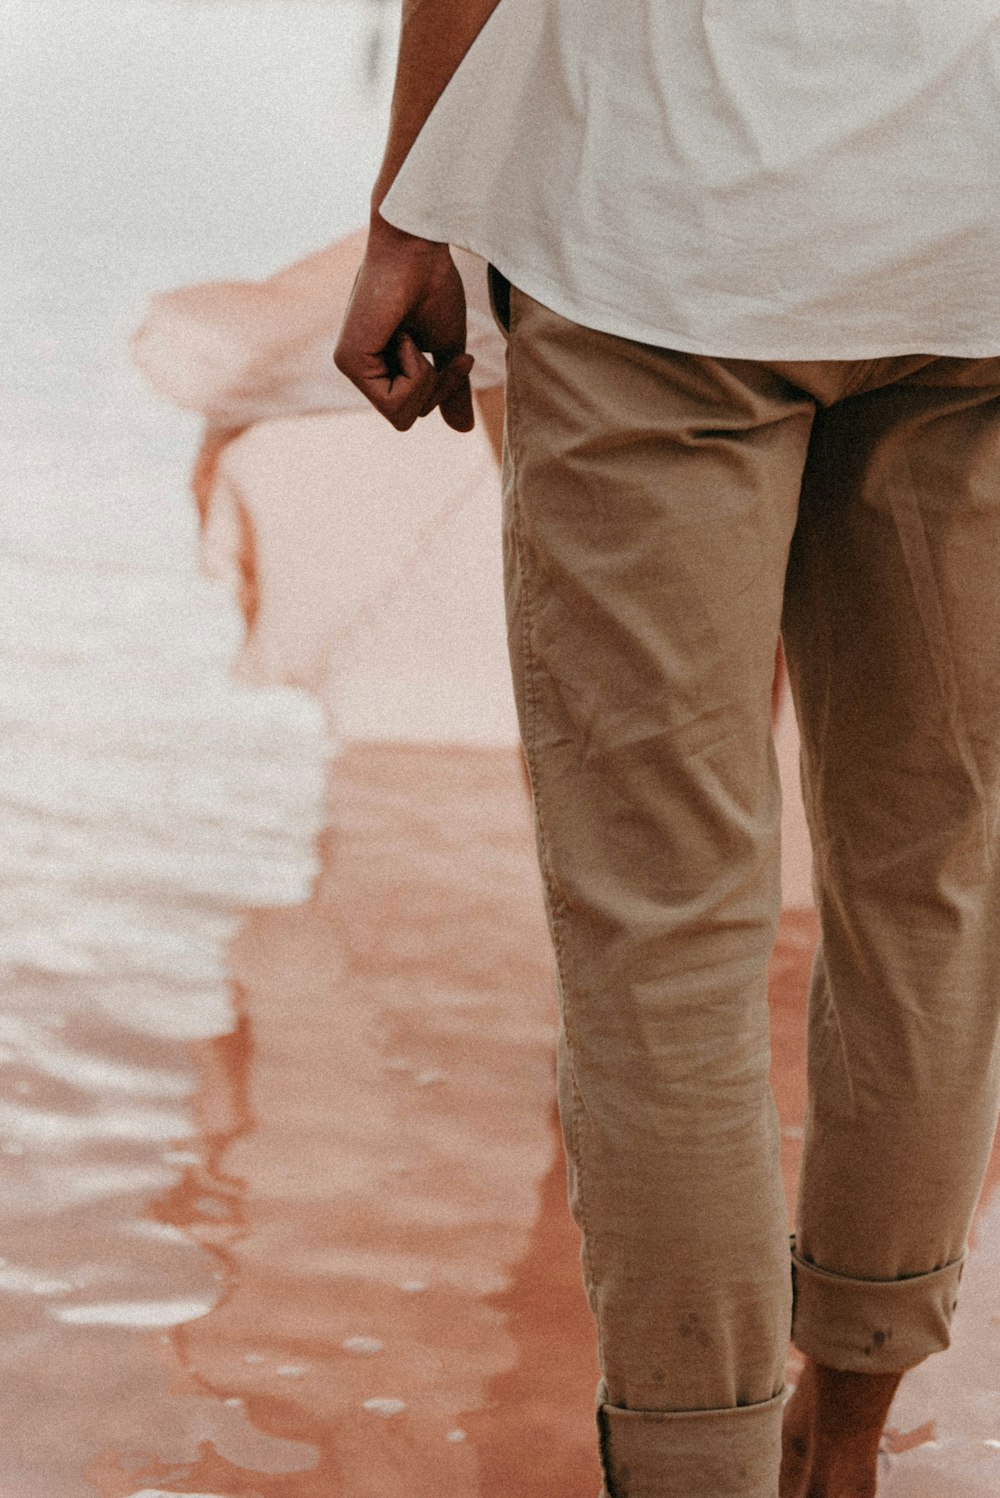 um homem andando na água segurando um guarda-chuva